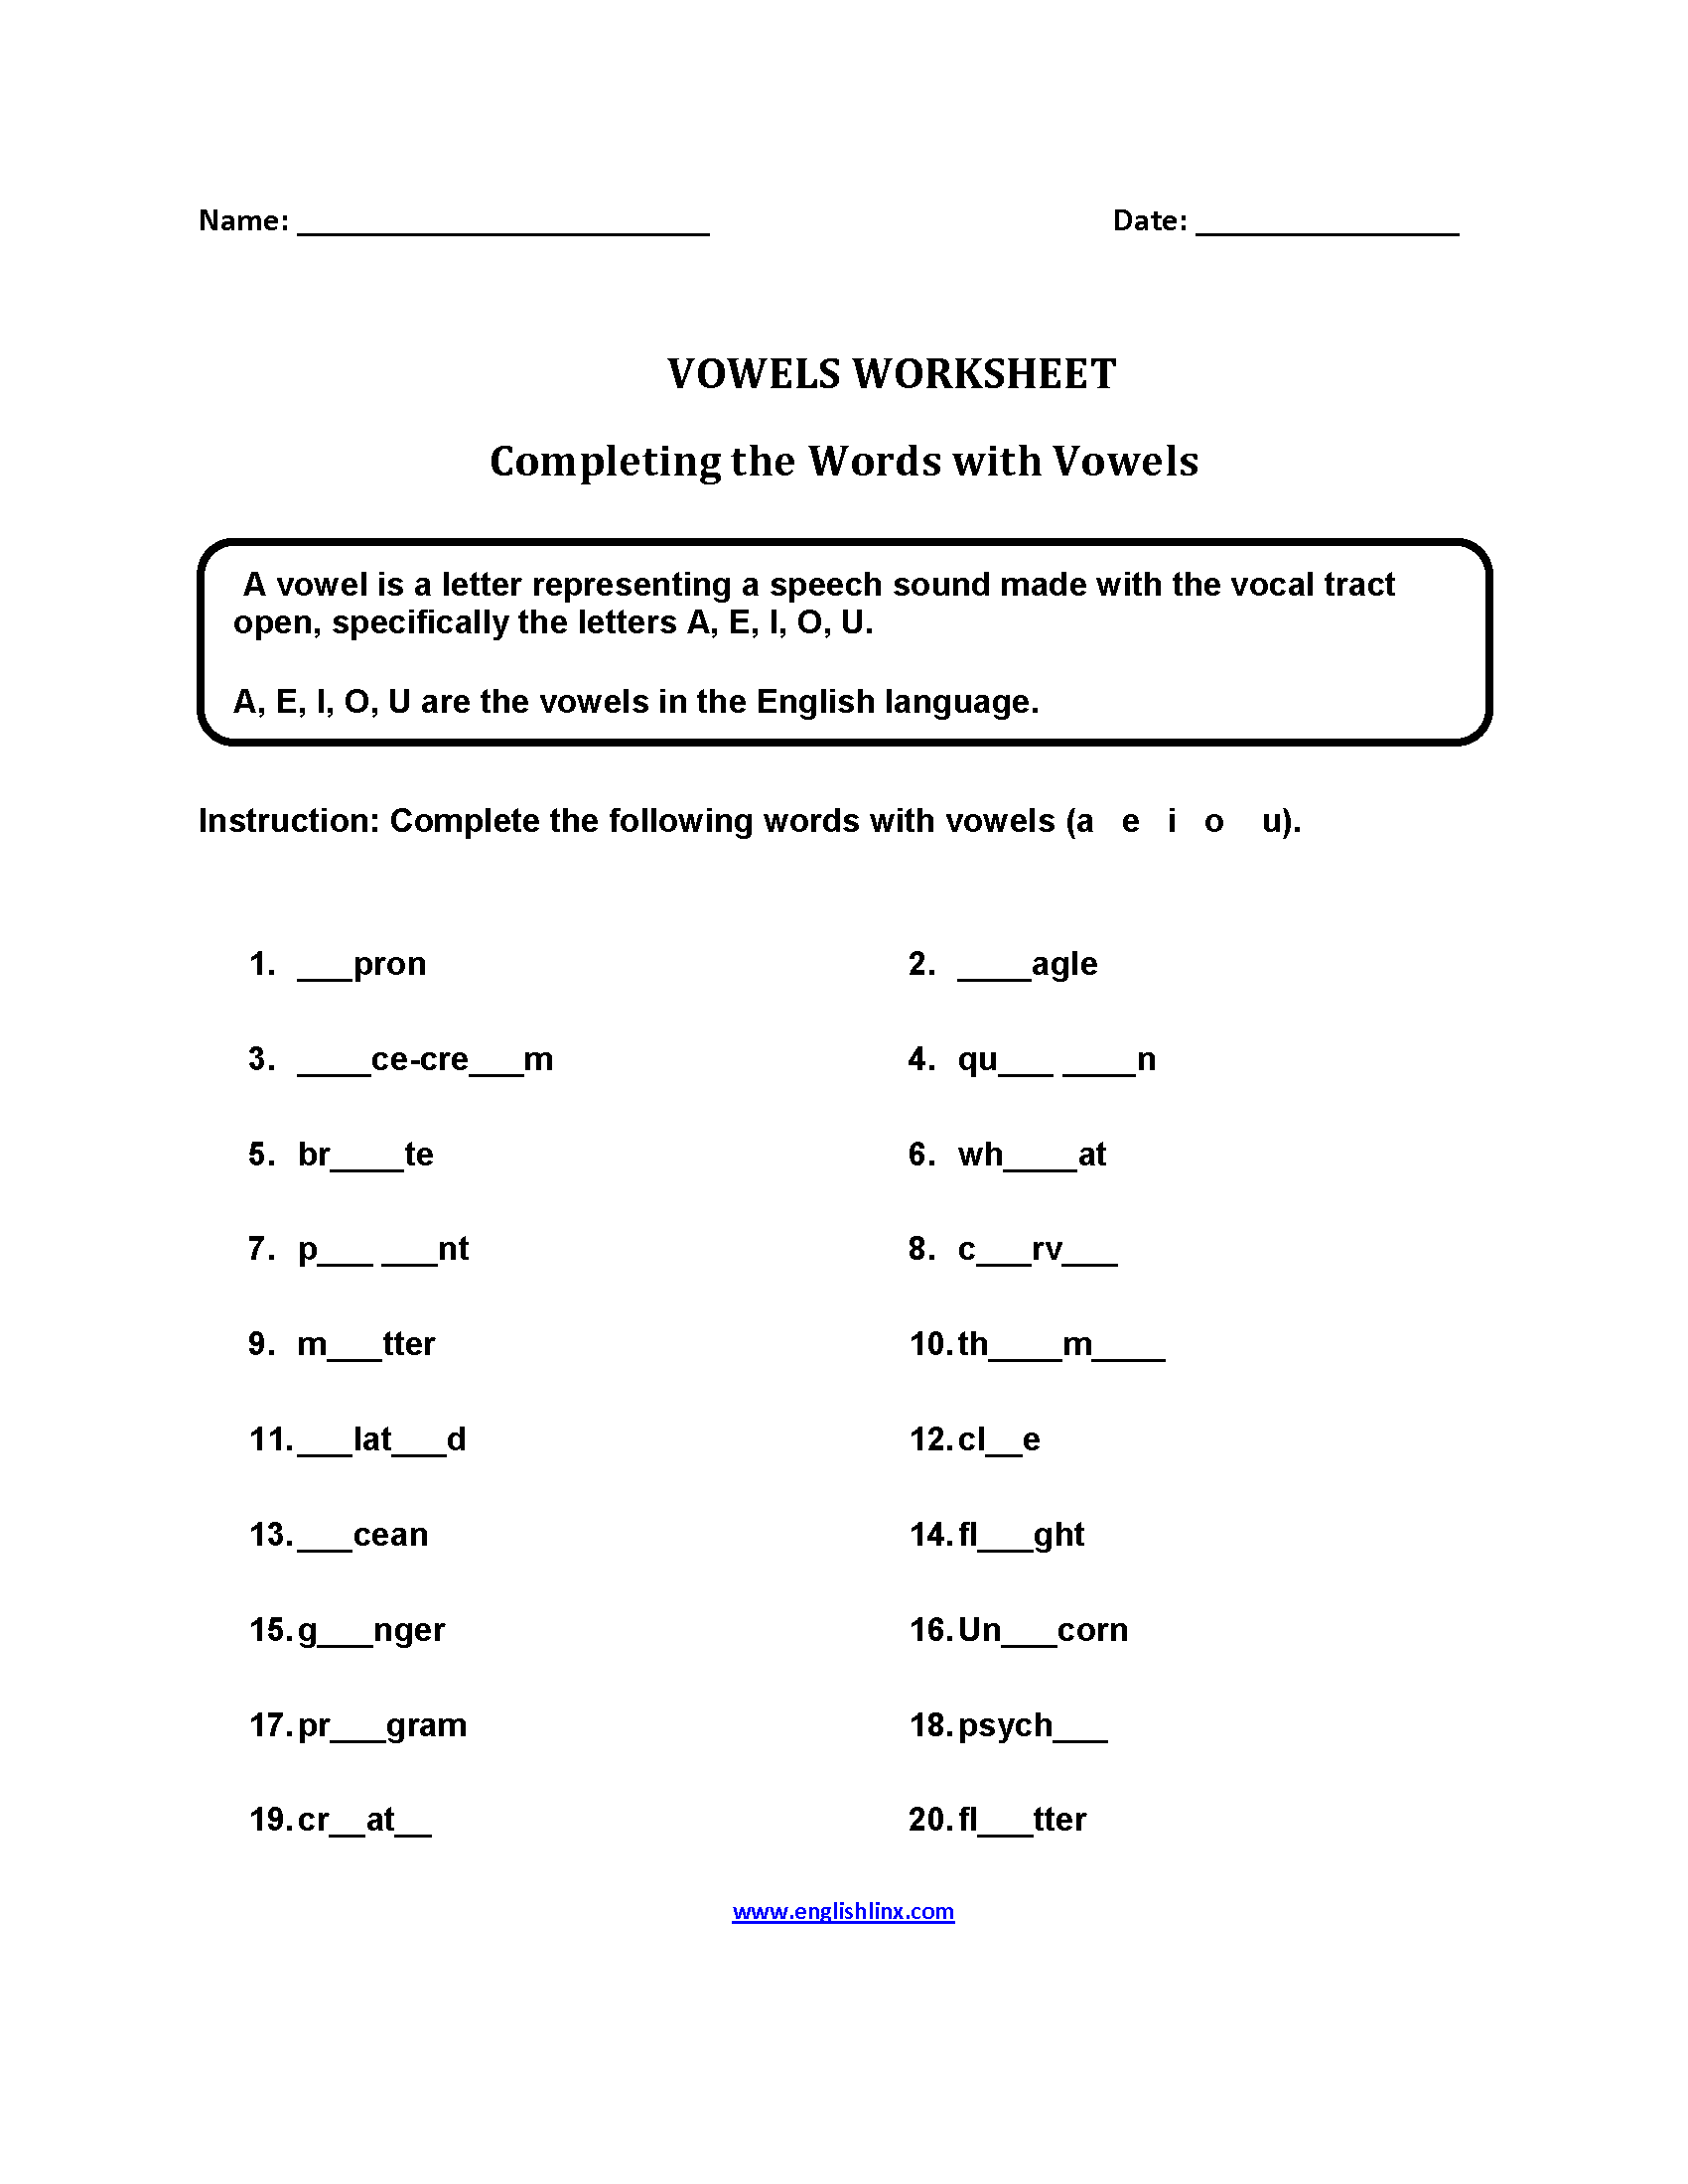 Completing Words Vowels Worksheets